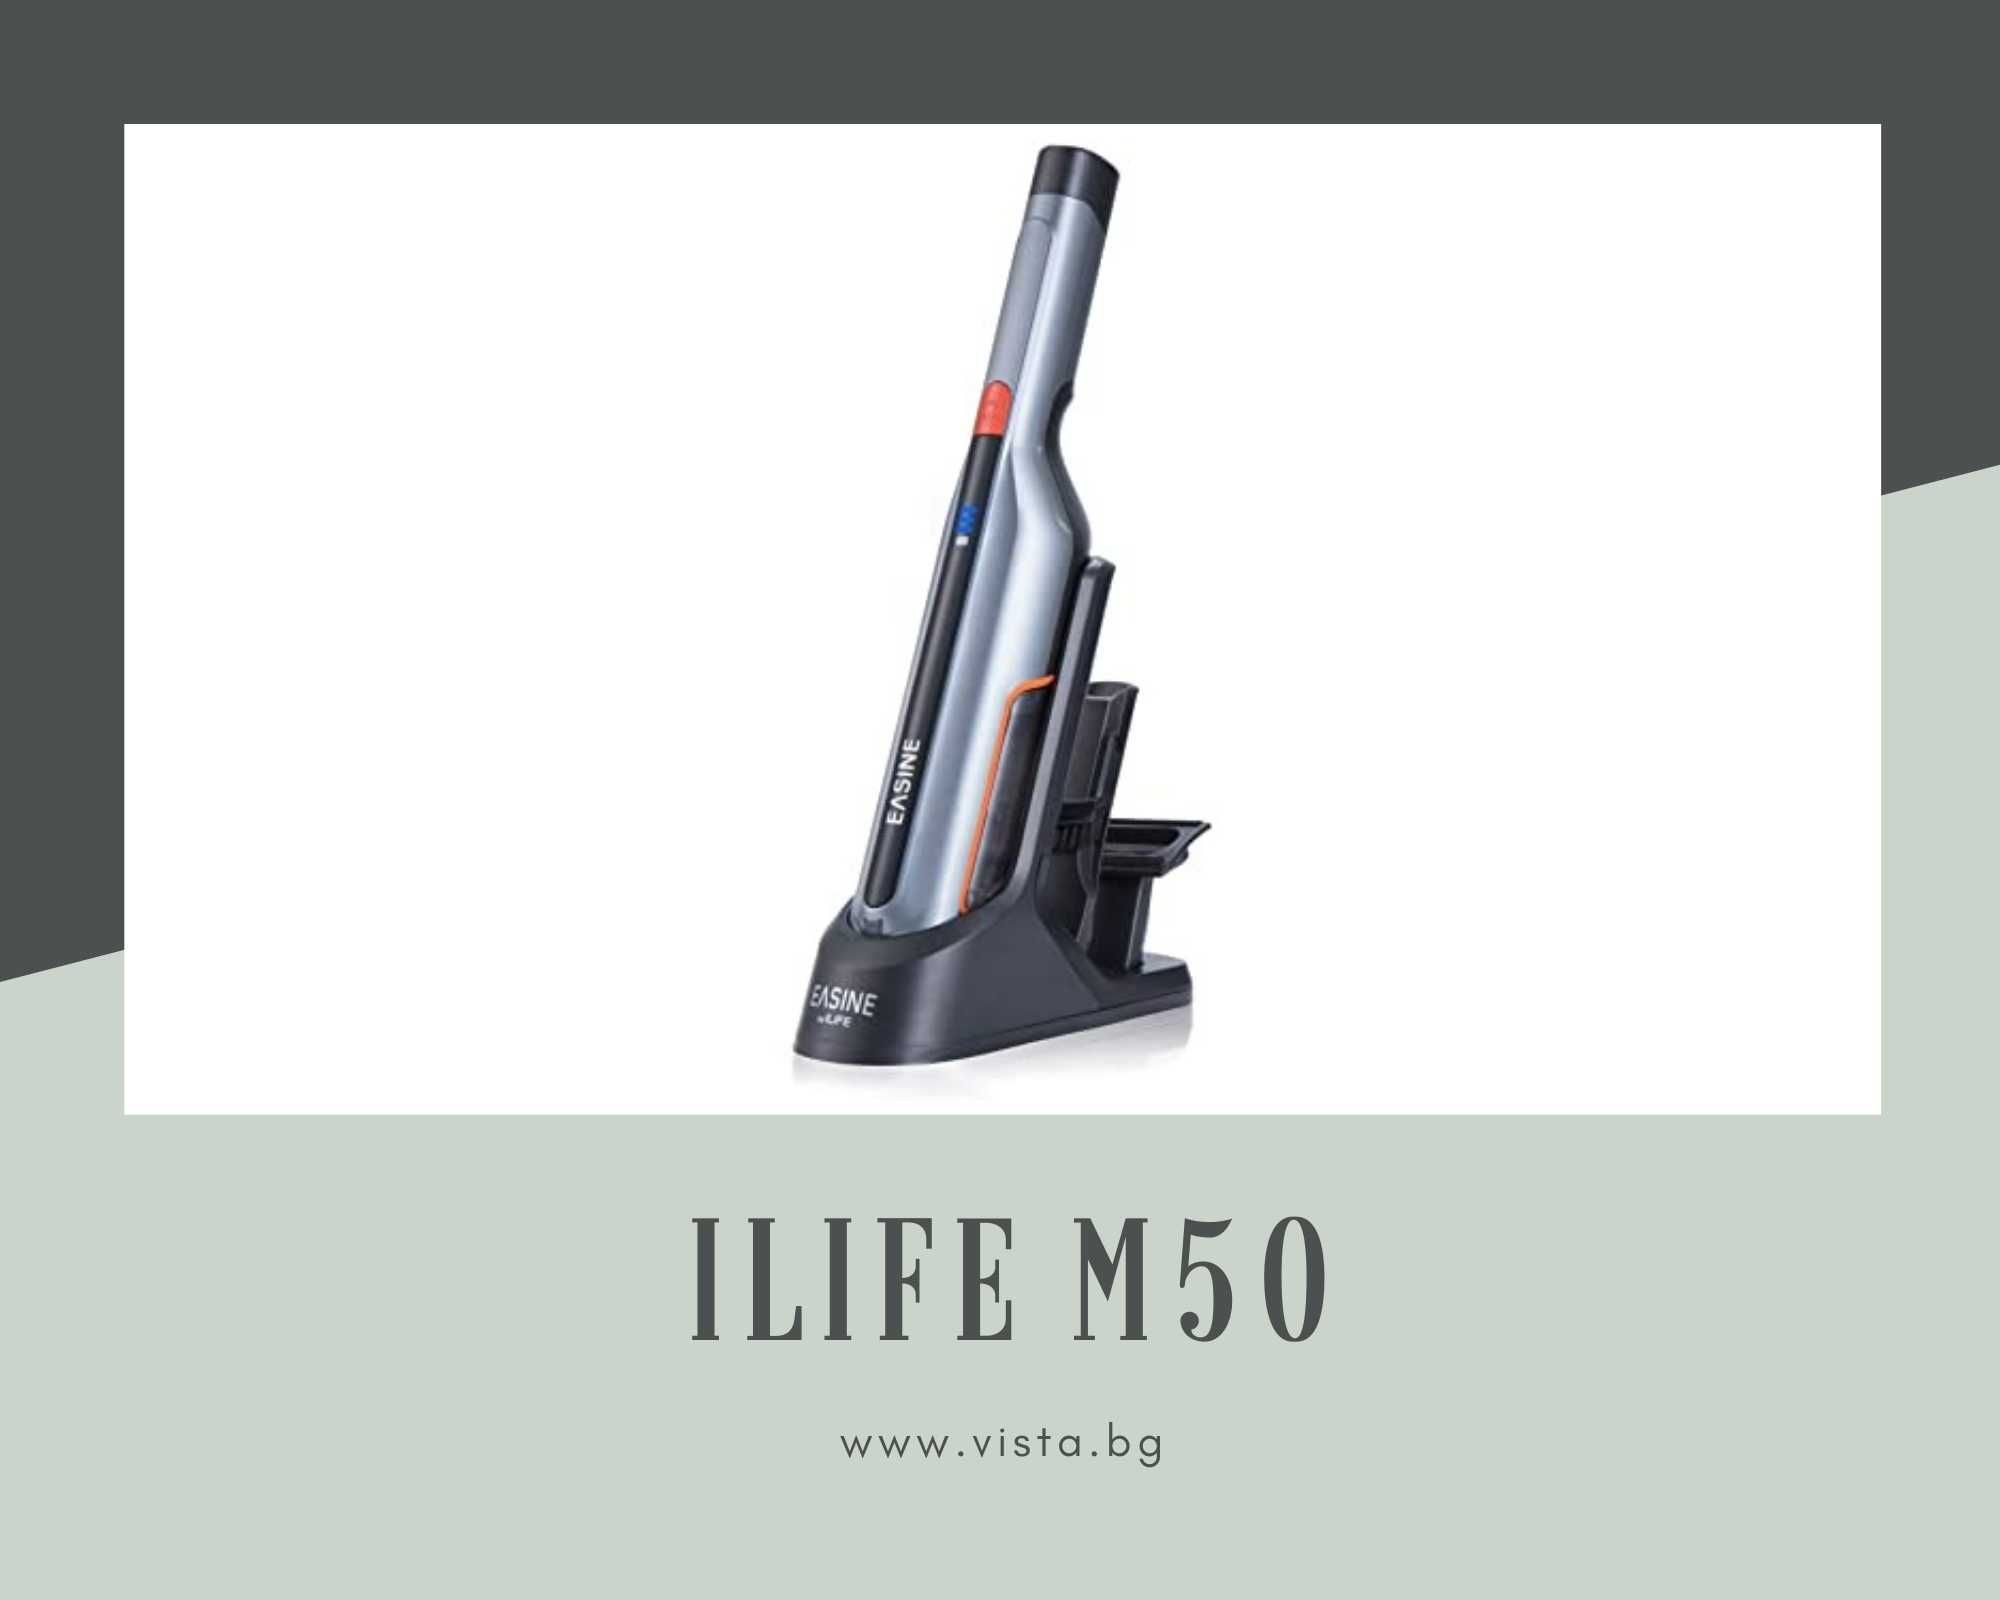 Прахосмукачка робот iLIFE M50